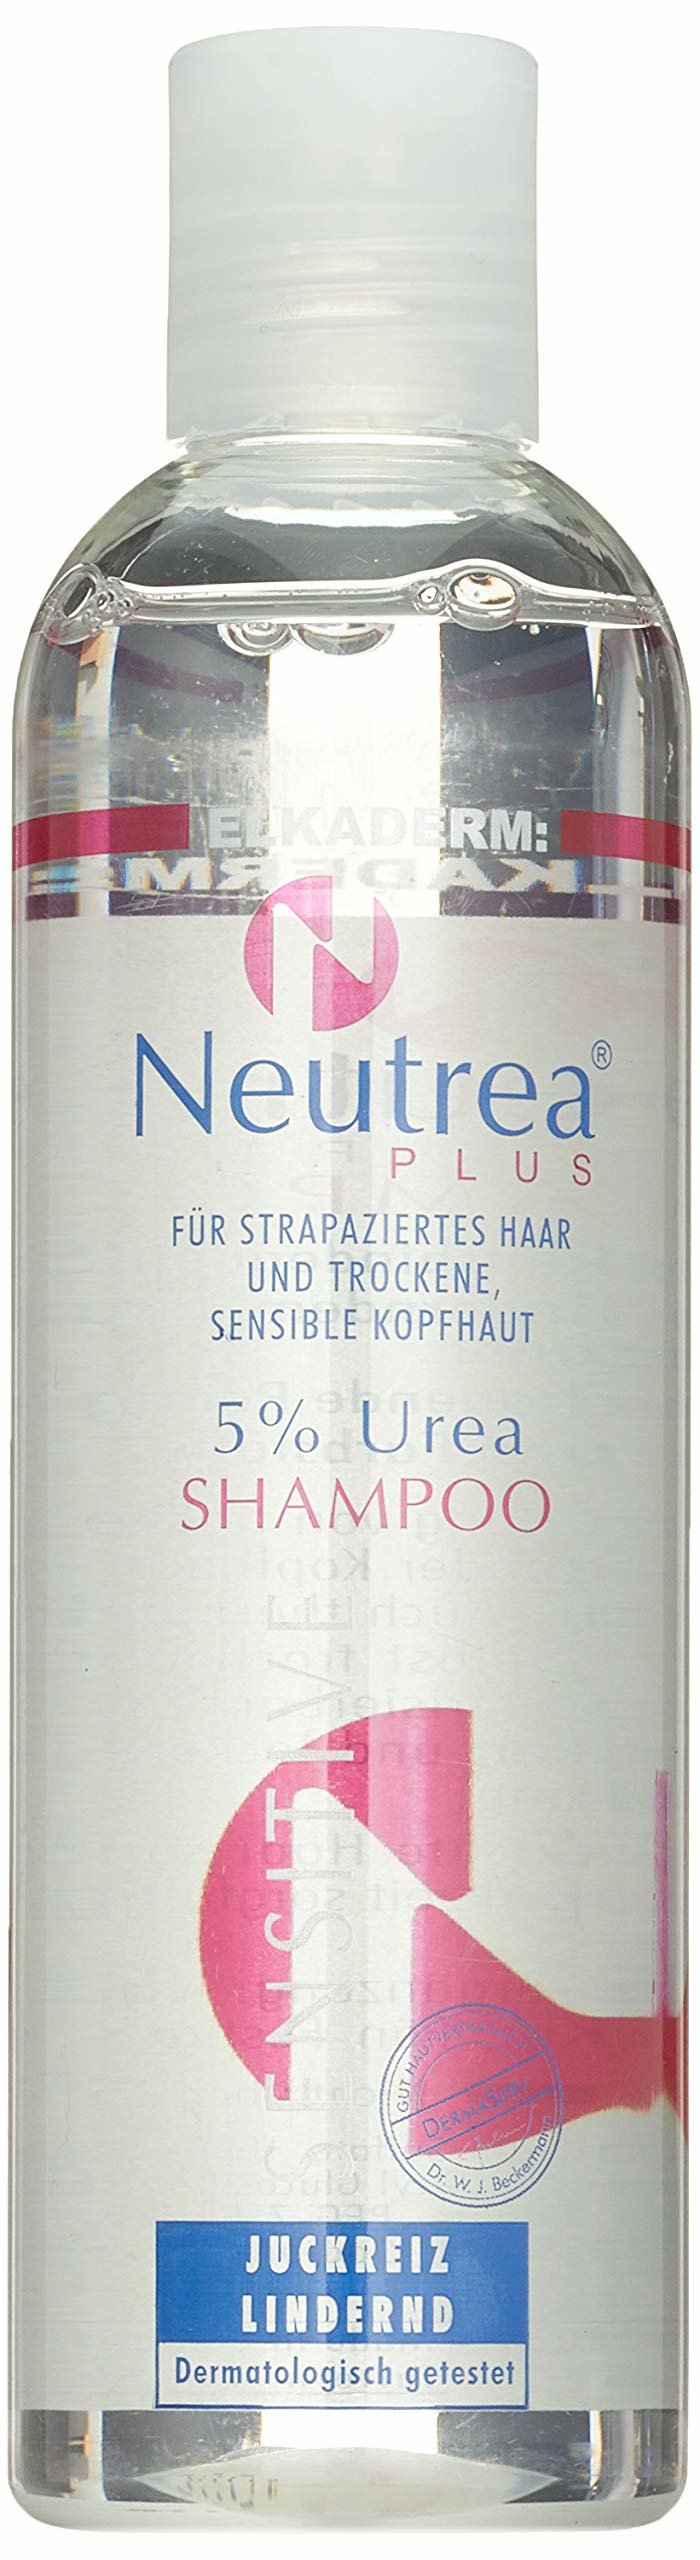 Elkaderm Neutrea 5% Urea Shamp. 250ml